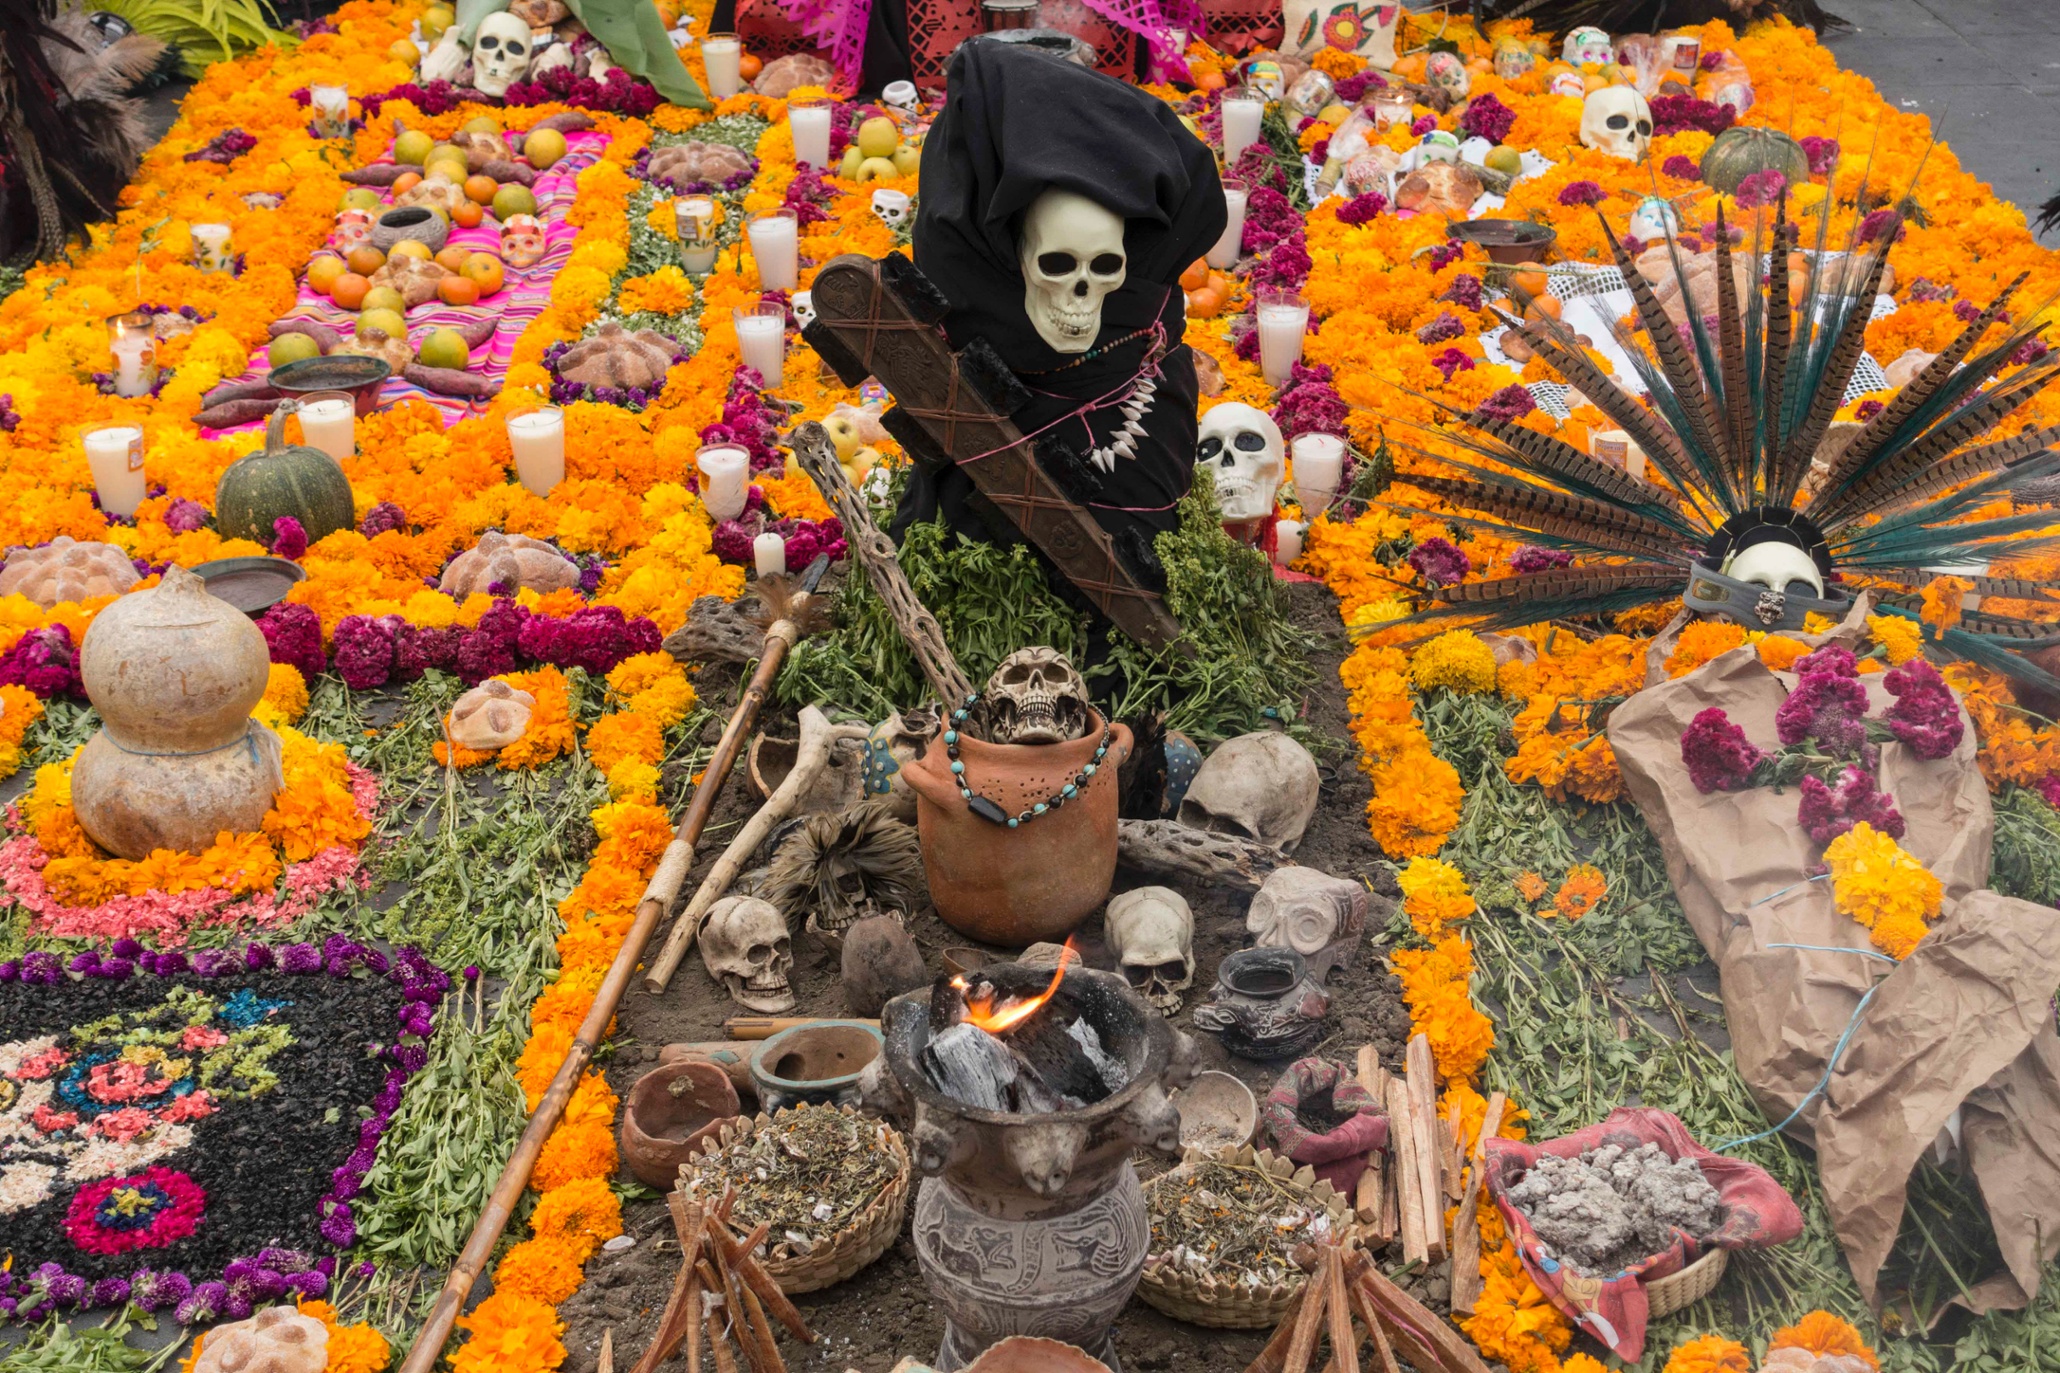 Конфеты собранные на кладбище. Мексика Лос Муэртос кладбище. Санта Муэрте Мексика карнавал. Диа де Лос Муэртос — день мертвых в Мексике. Мексика праздник мертвых могилы.